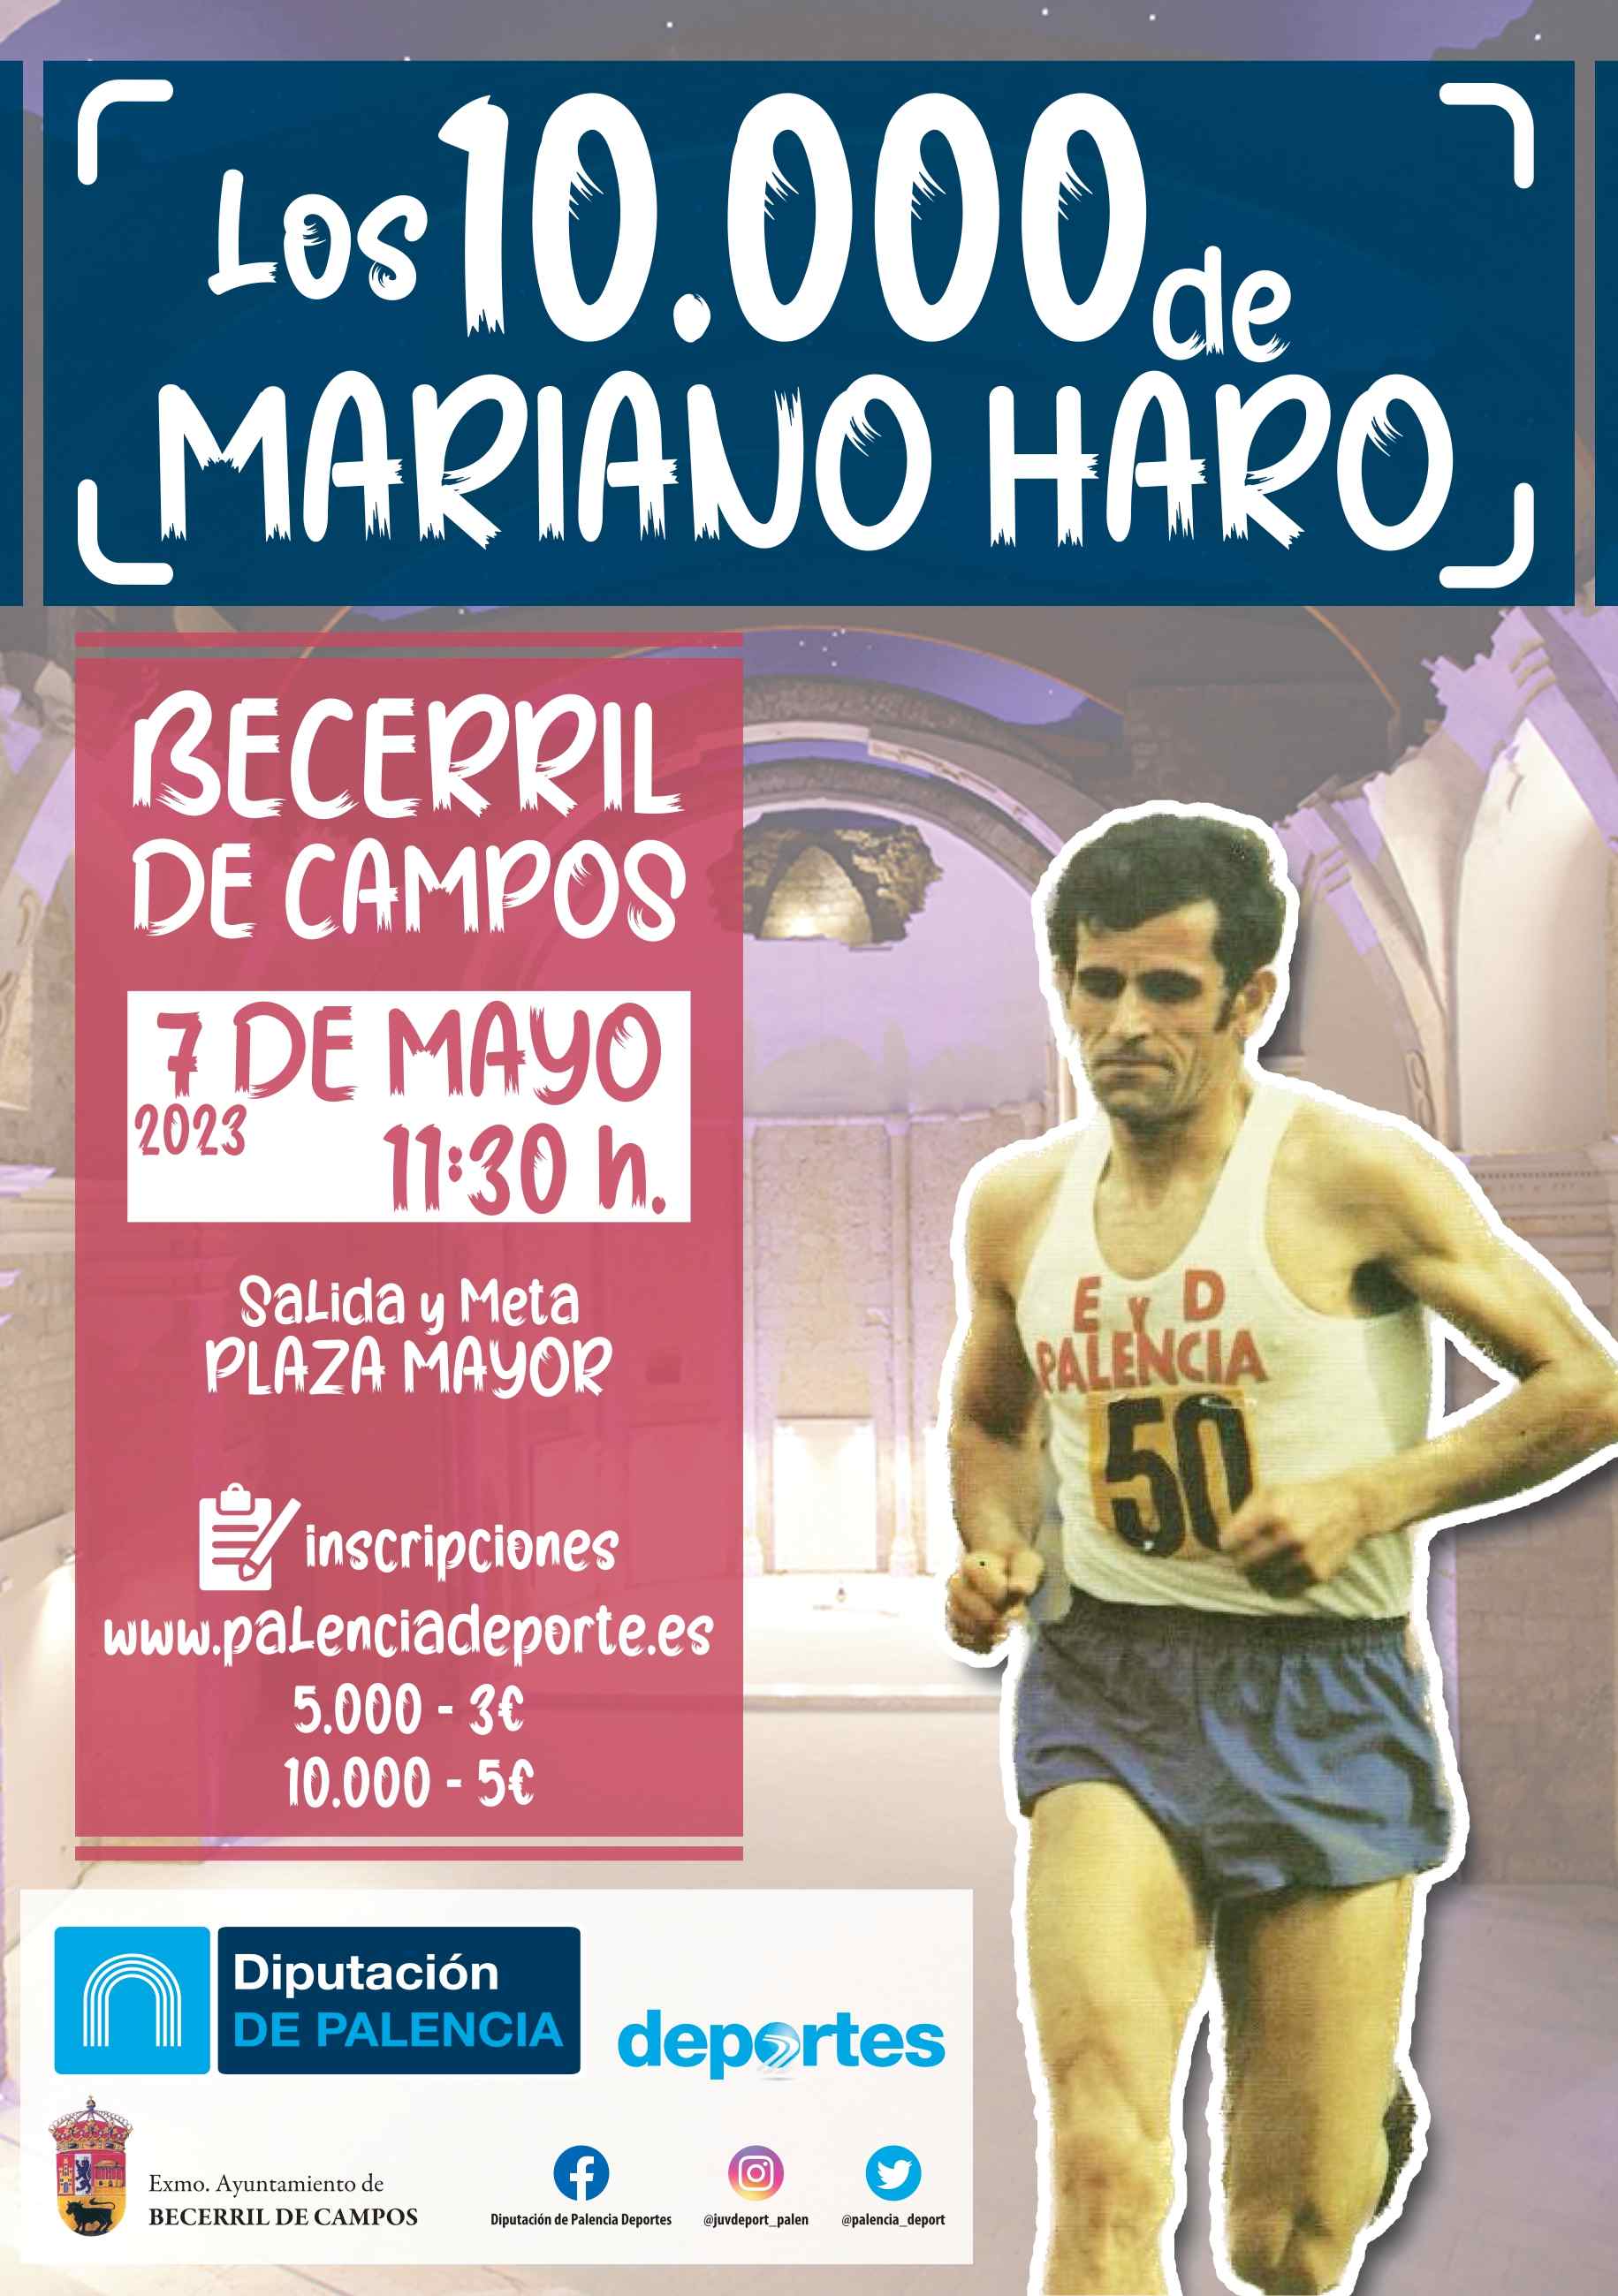 LOS 10000 DE MARIANO HARO 2023 - Register